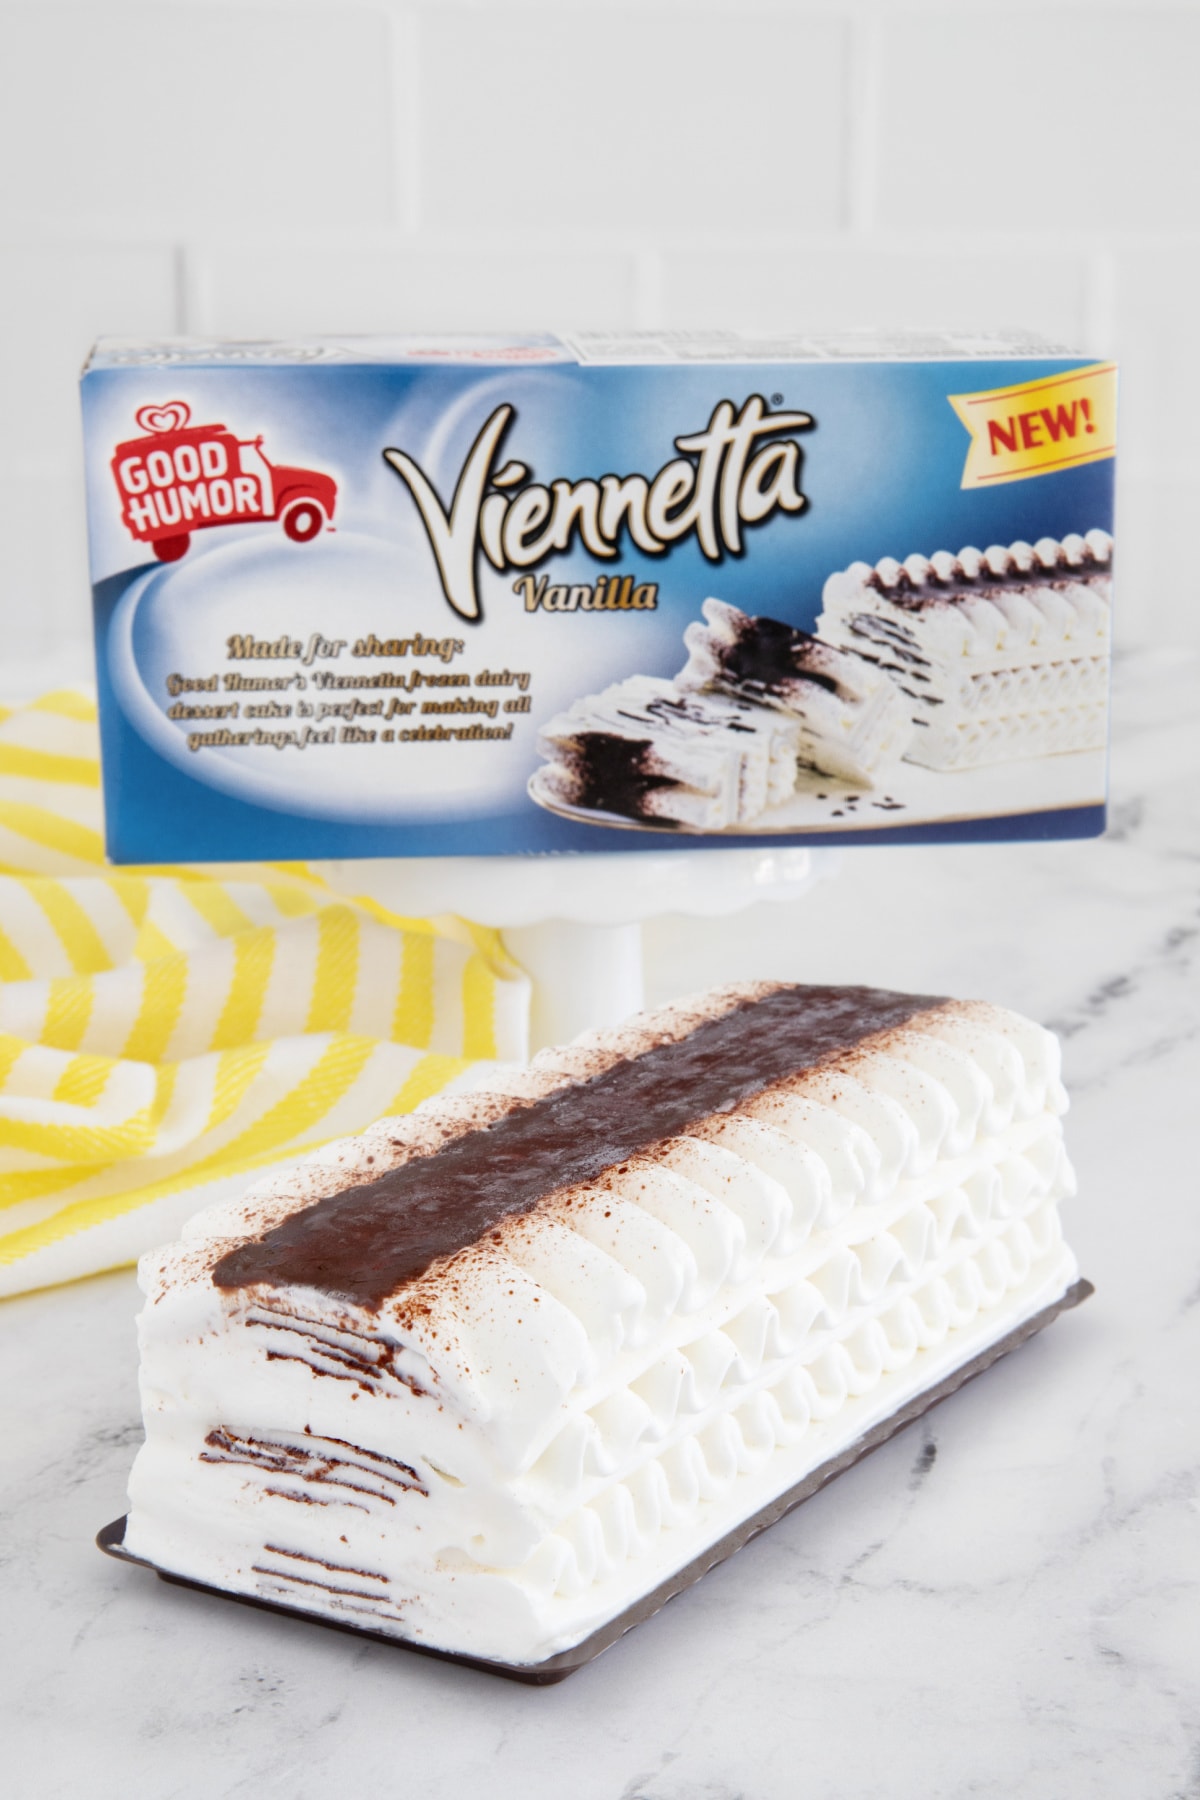 Viennetta Vanilla ice cream cake